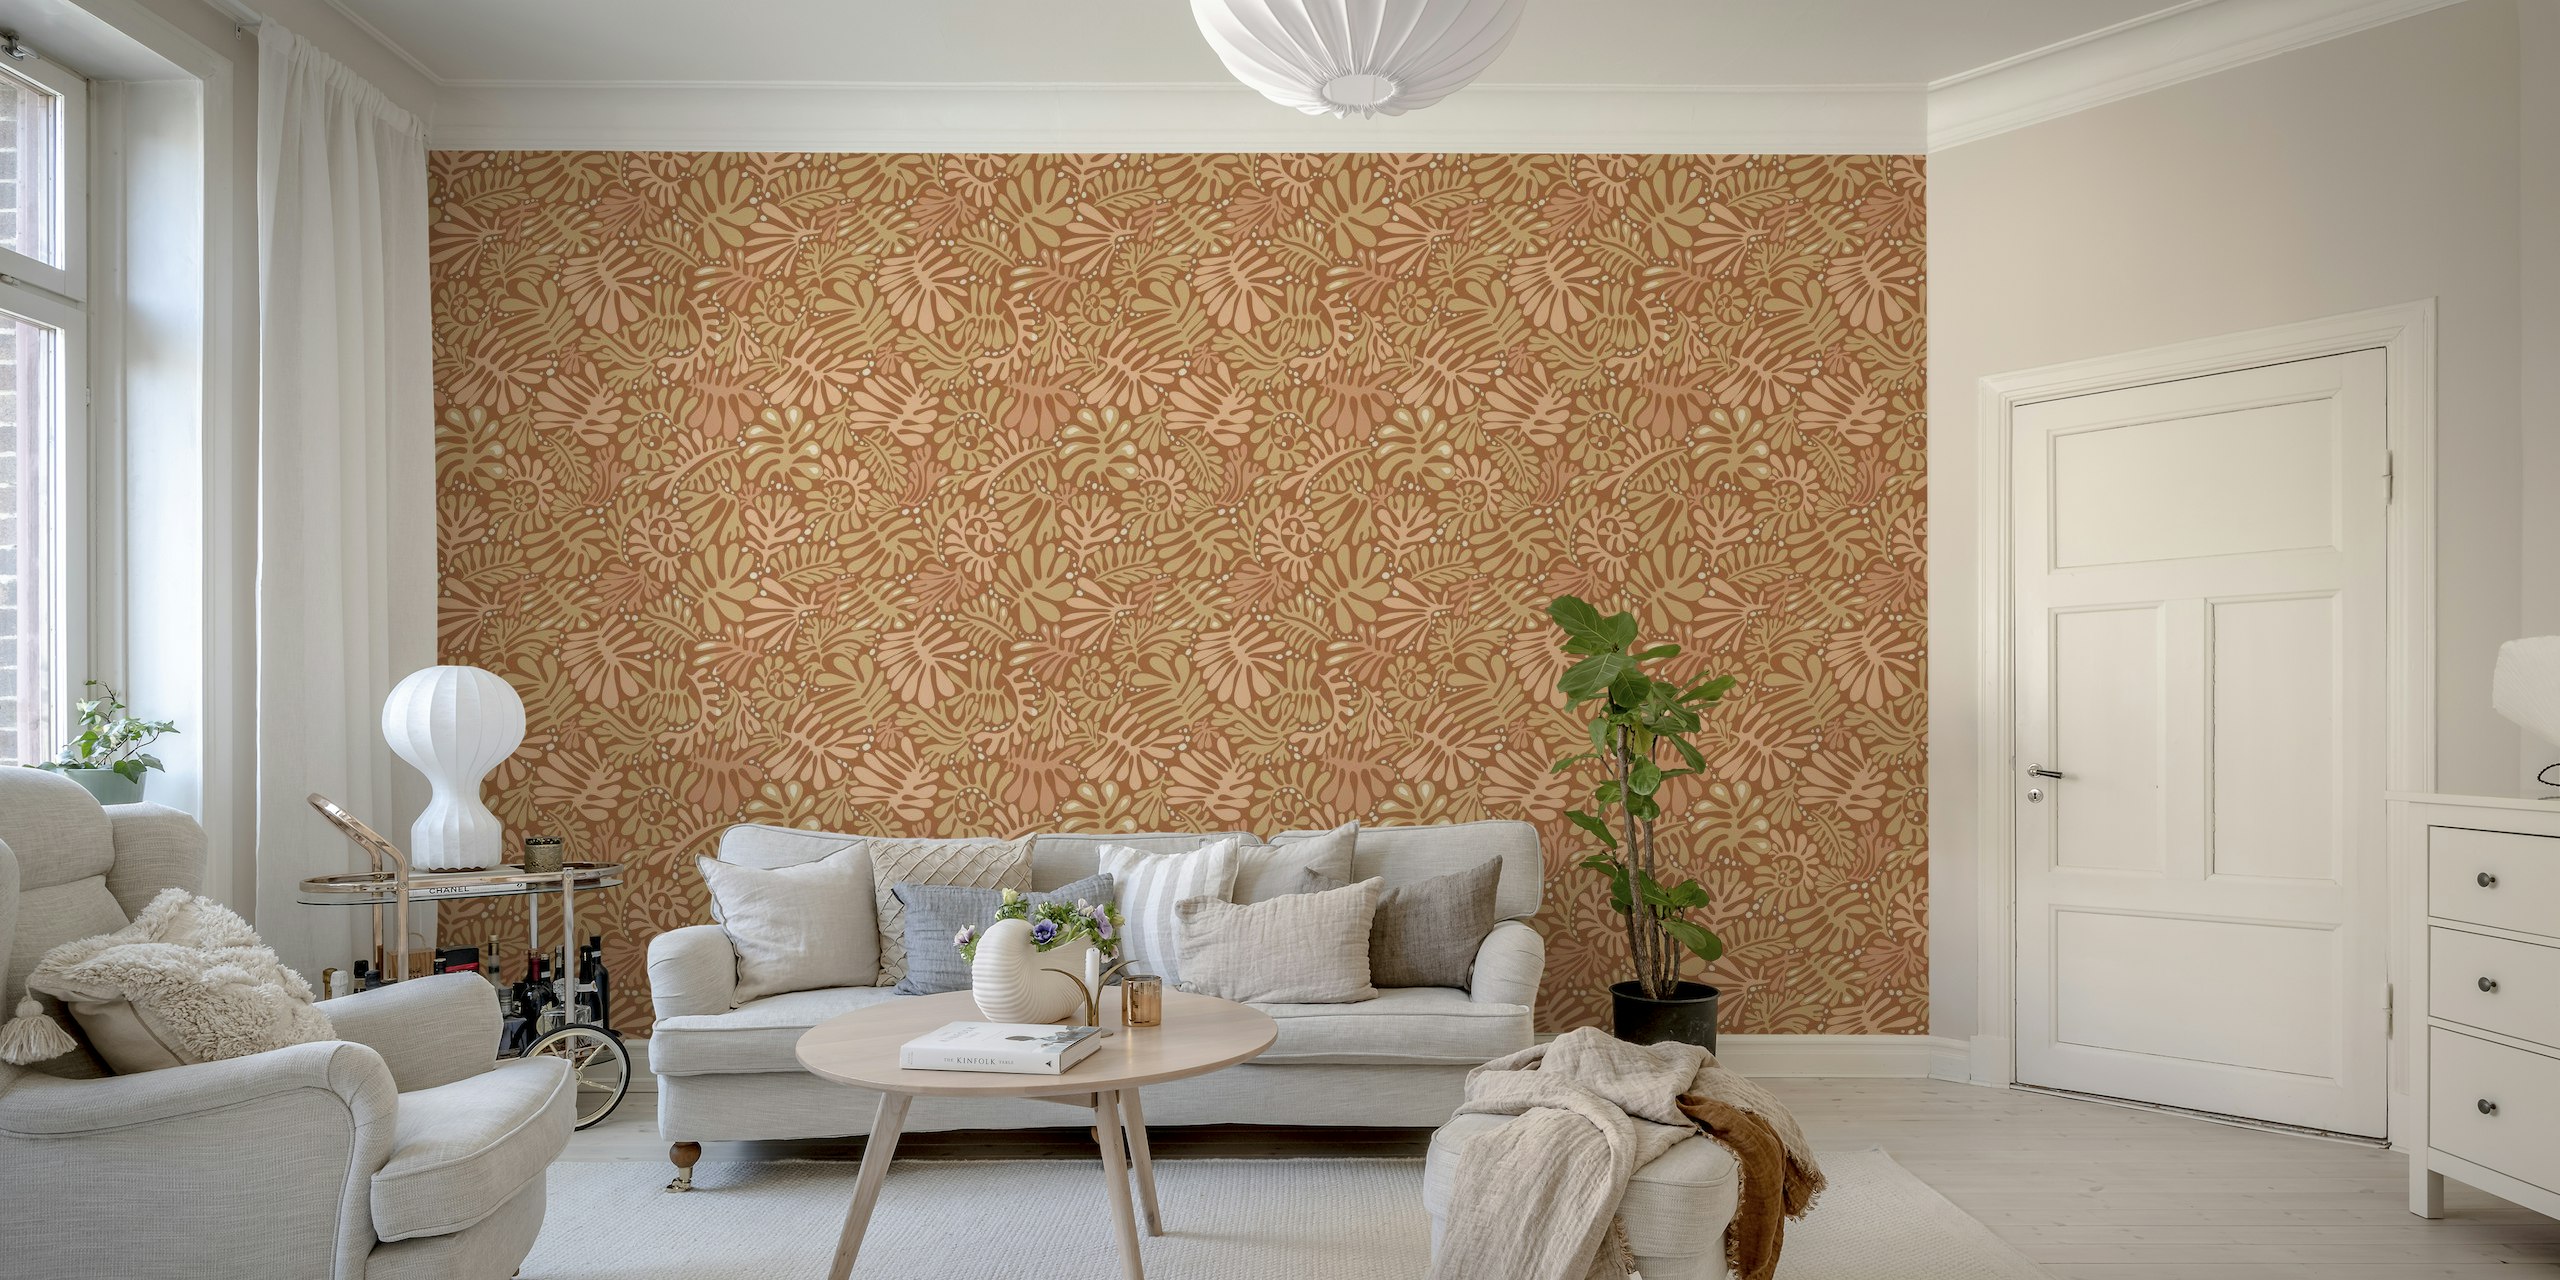 Fotomural vinílico de parede com padrão de folhas de terracota enferrujada, tons de terra sutis para decoração natural